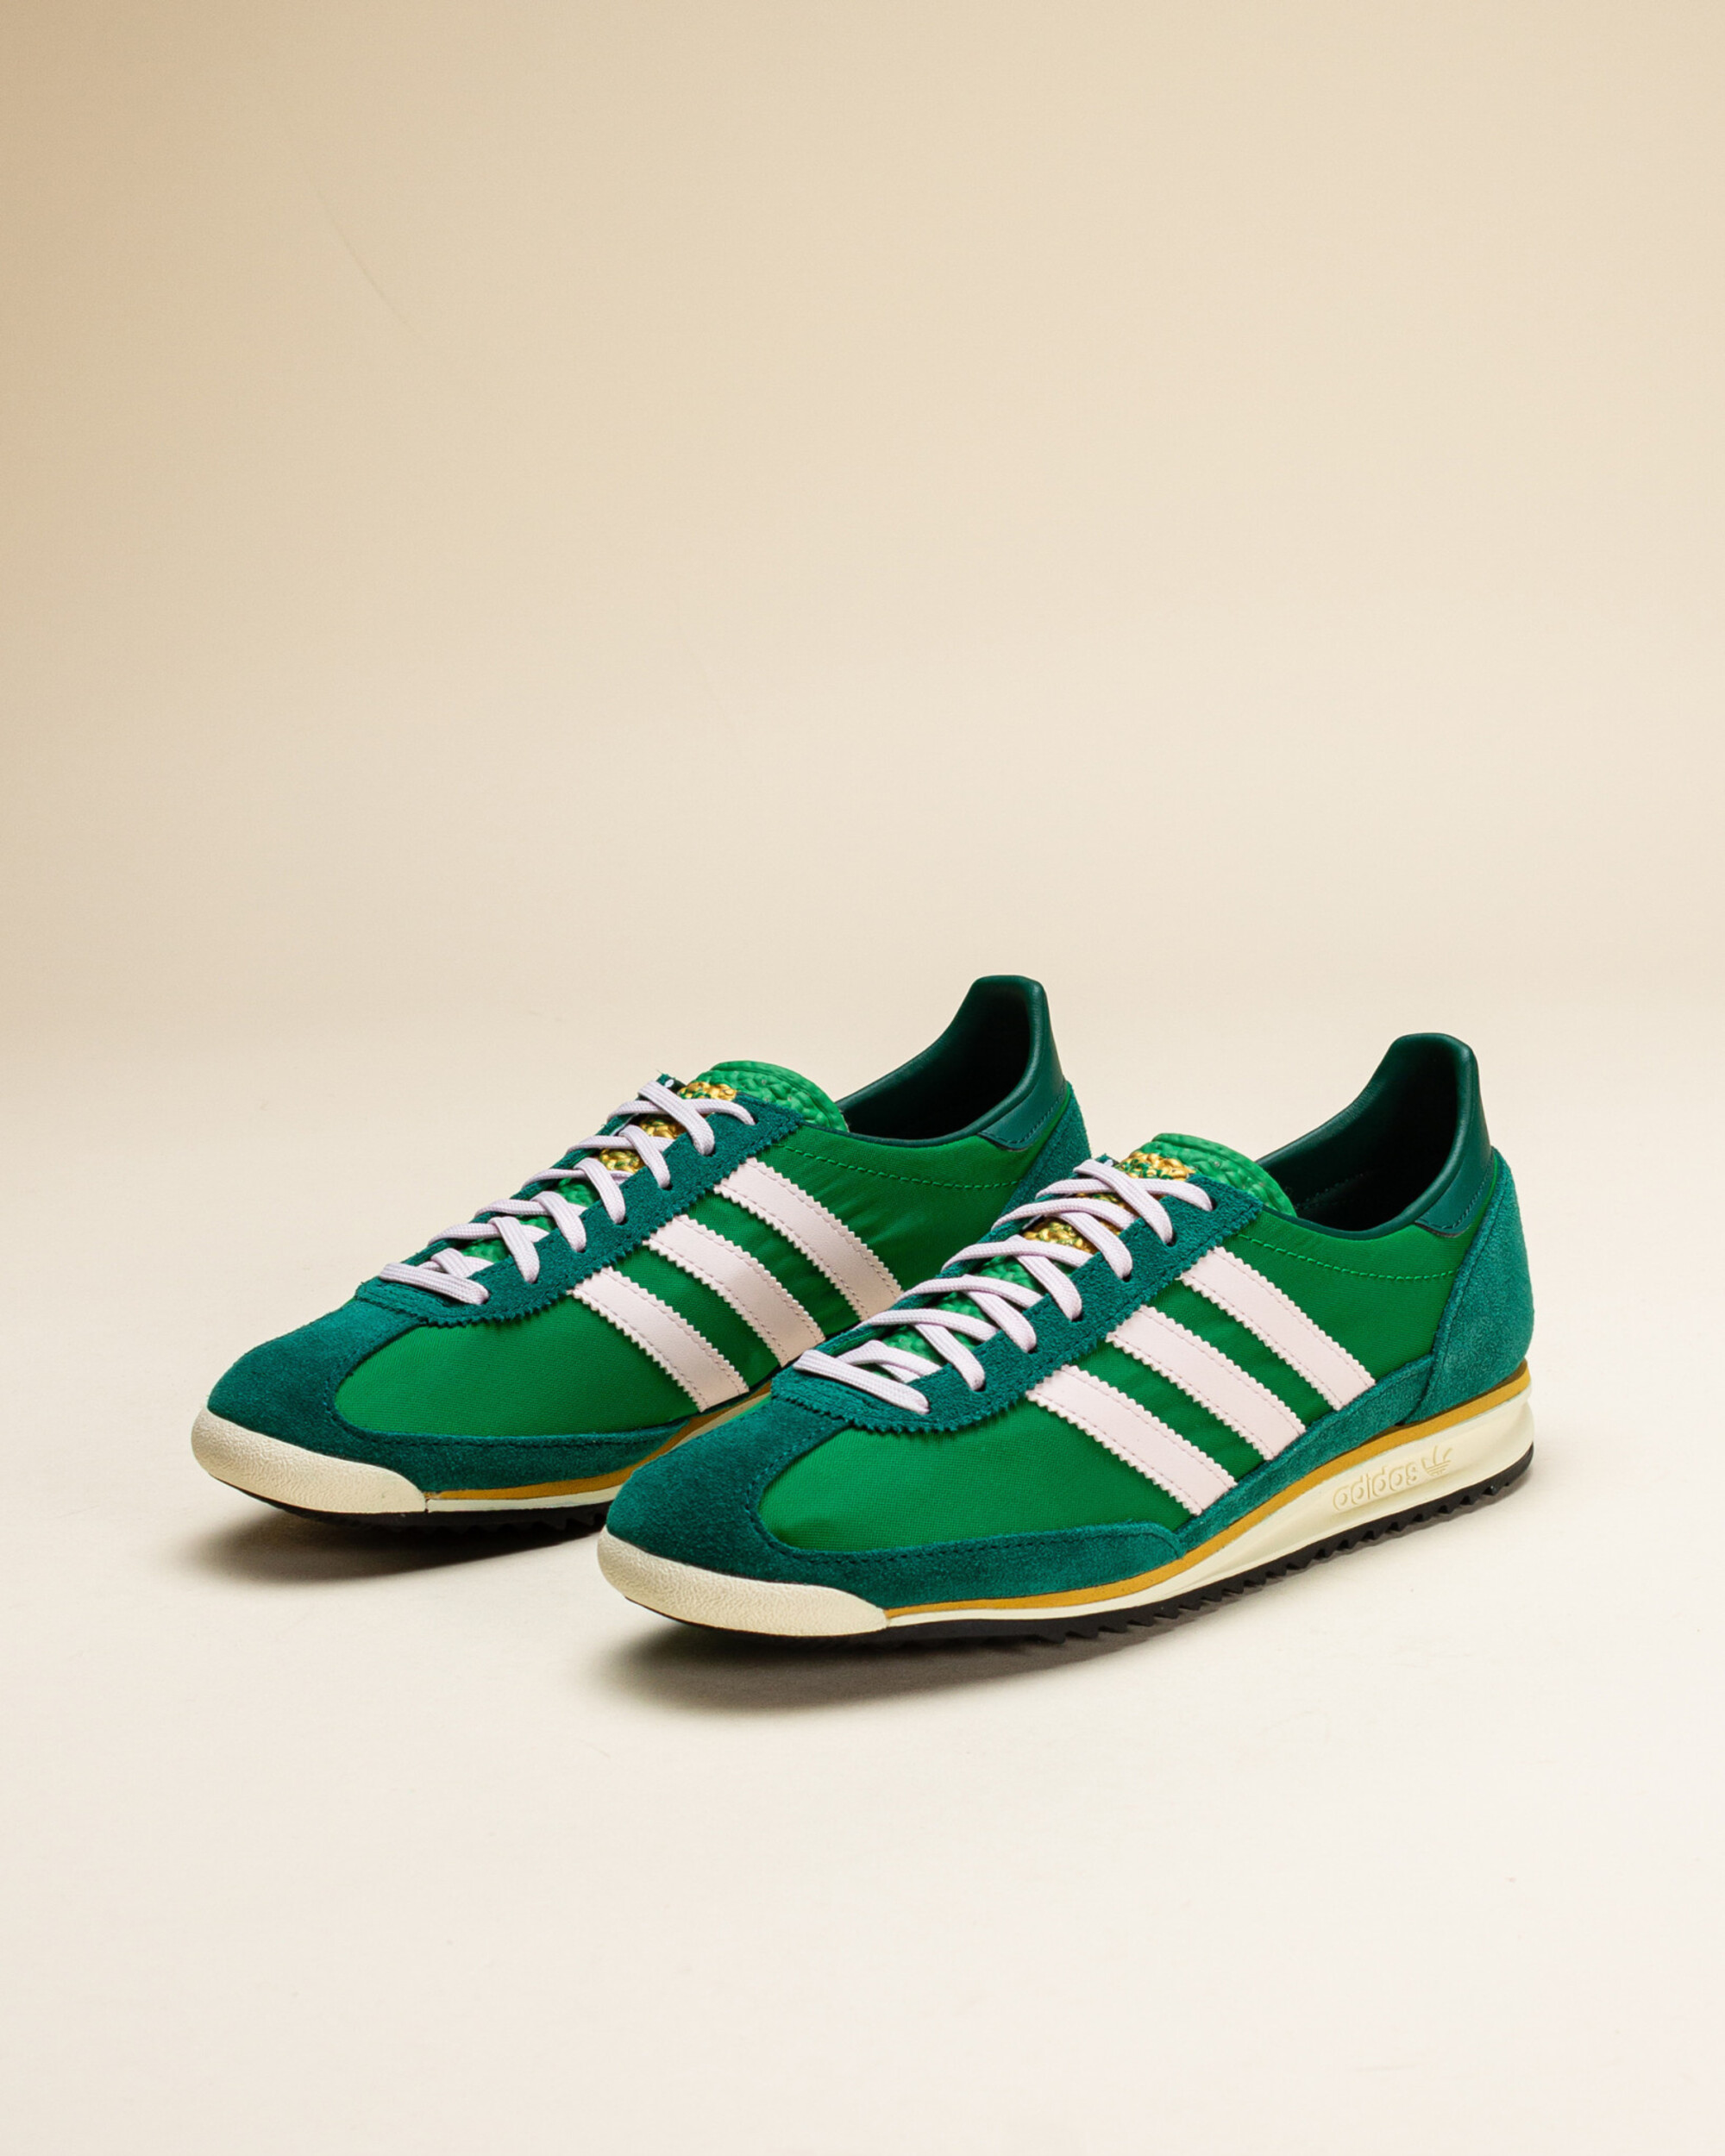 Adidas SL 72 OG W Night Indigo / Semi Green Spark / Collegiate Green